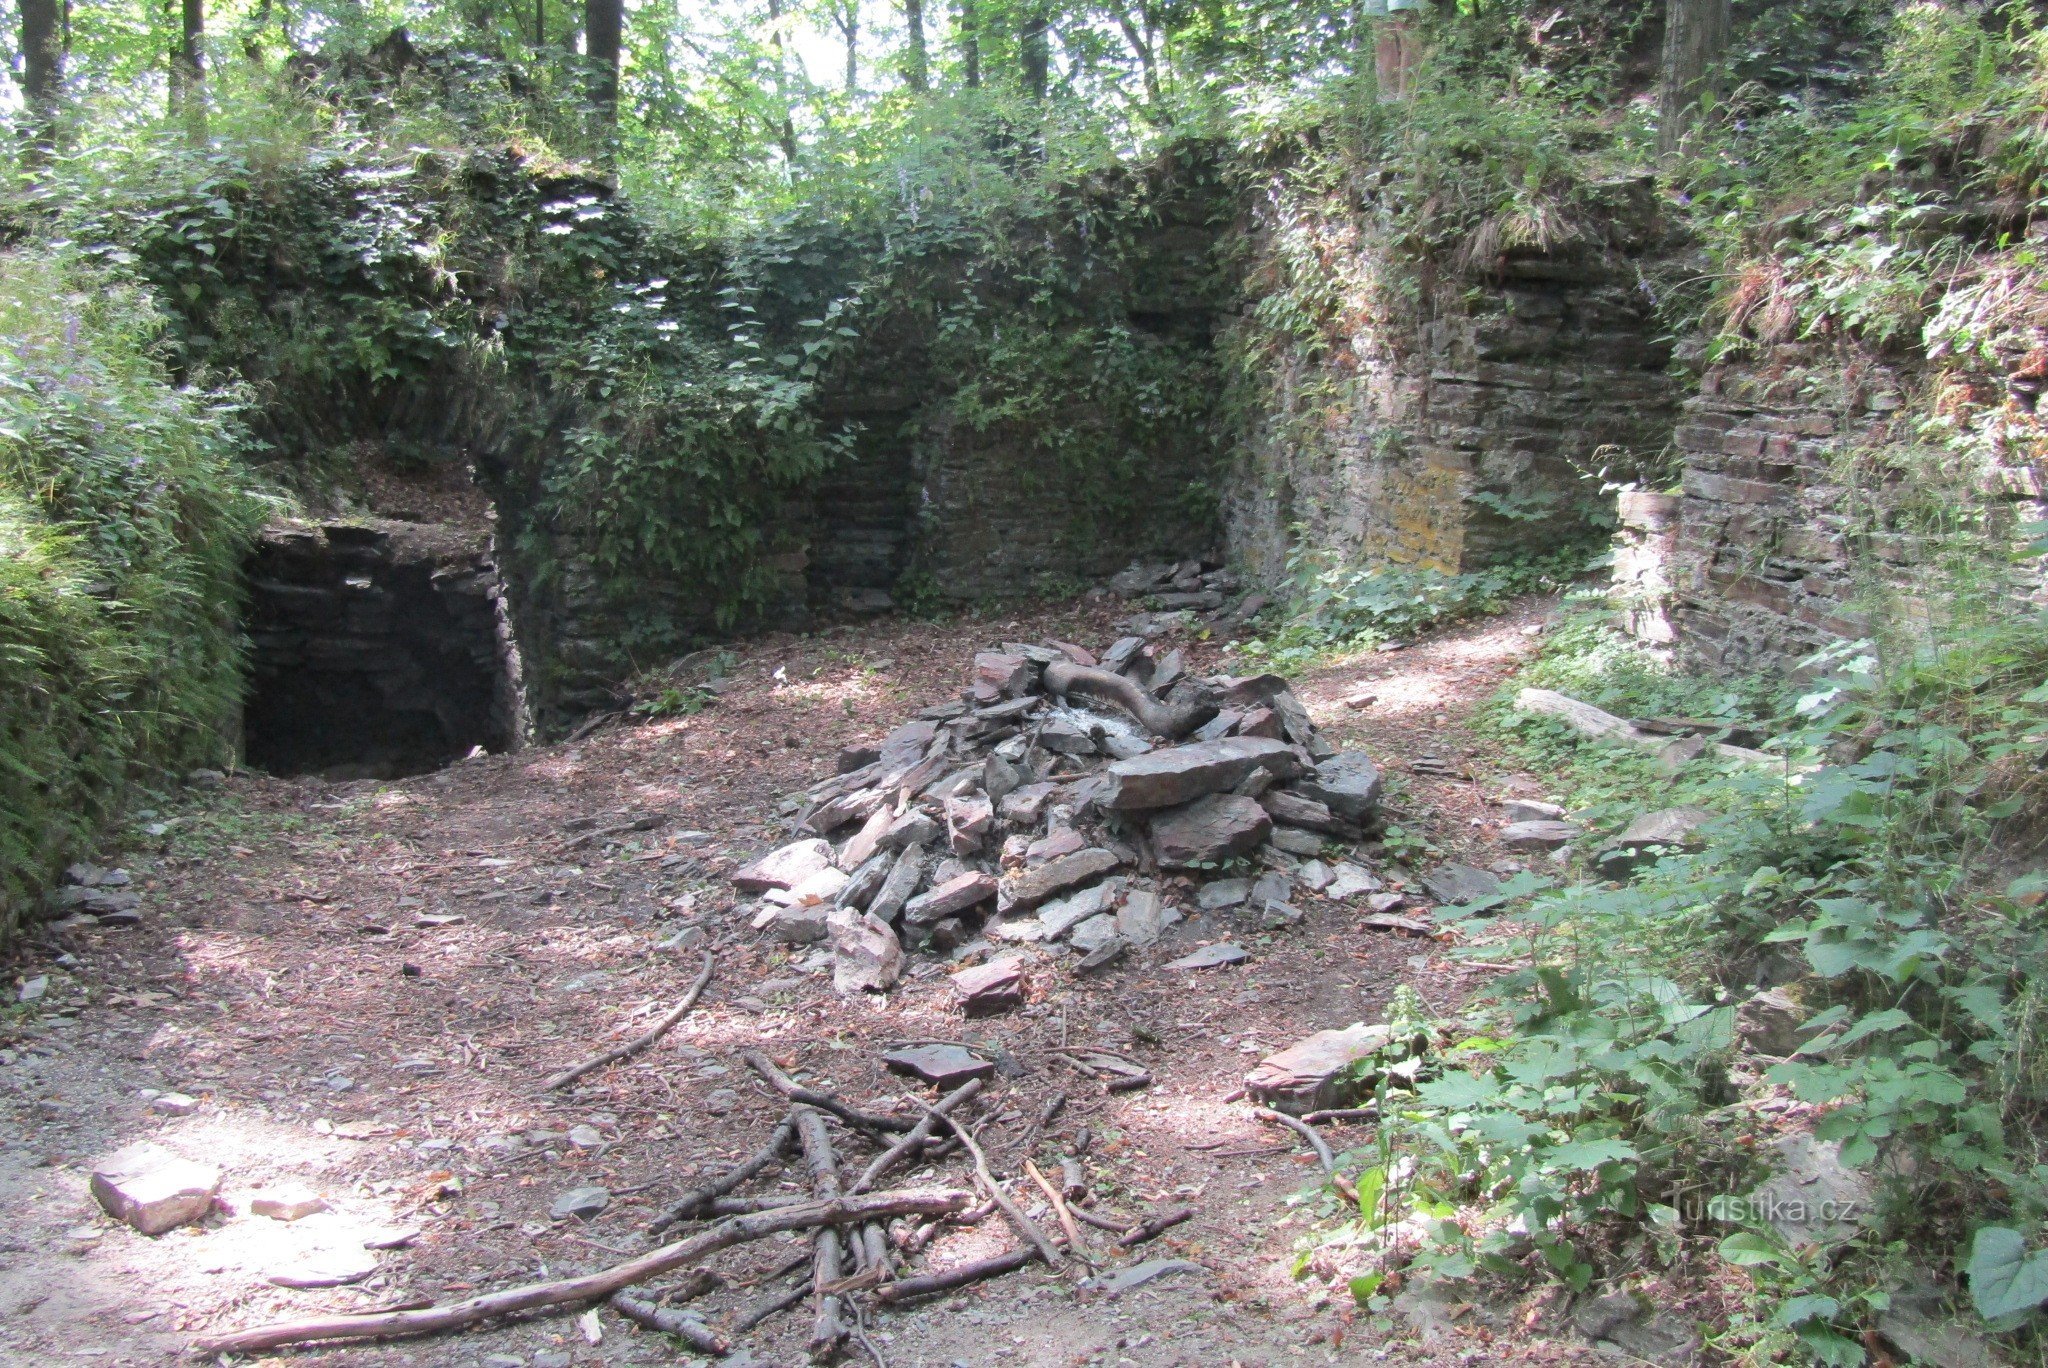 Till ruinerna av Drahotuš slott